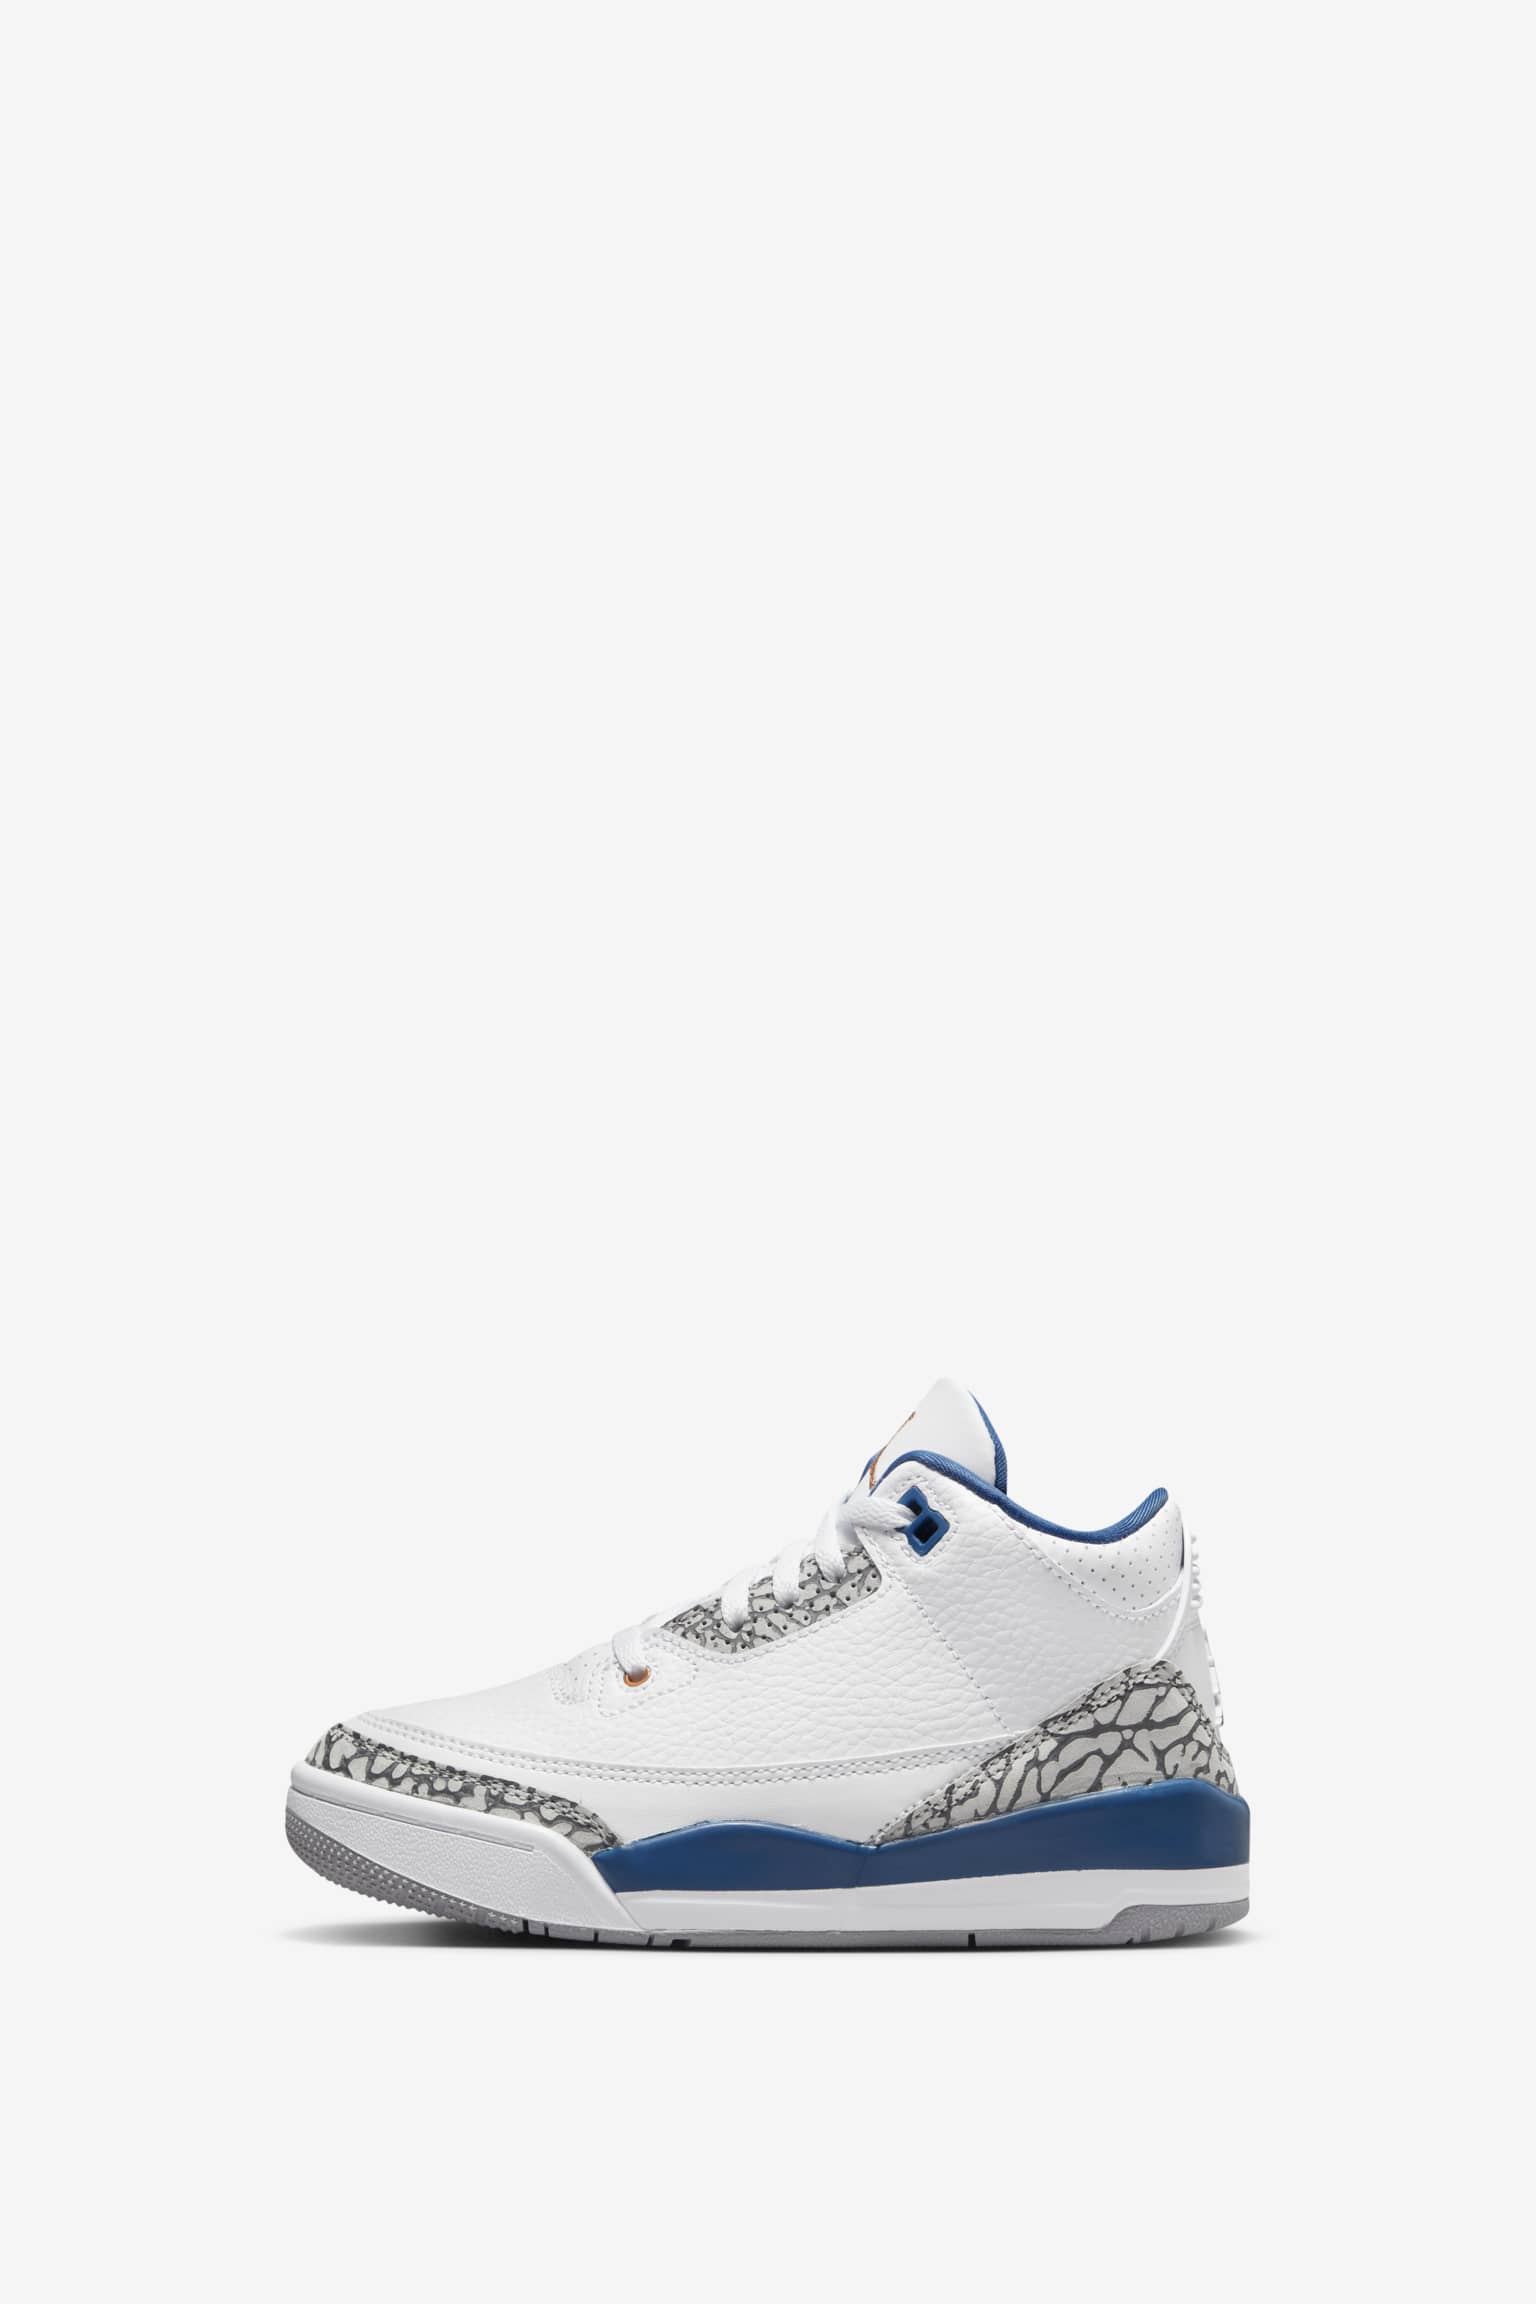 Nike Air Jordan 3 Retro True Blue